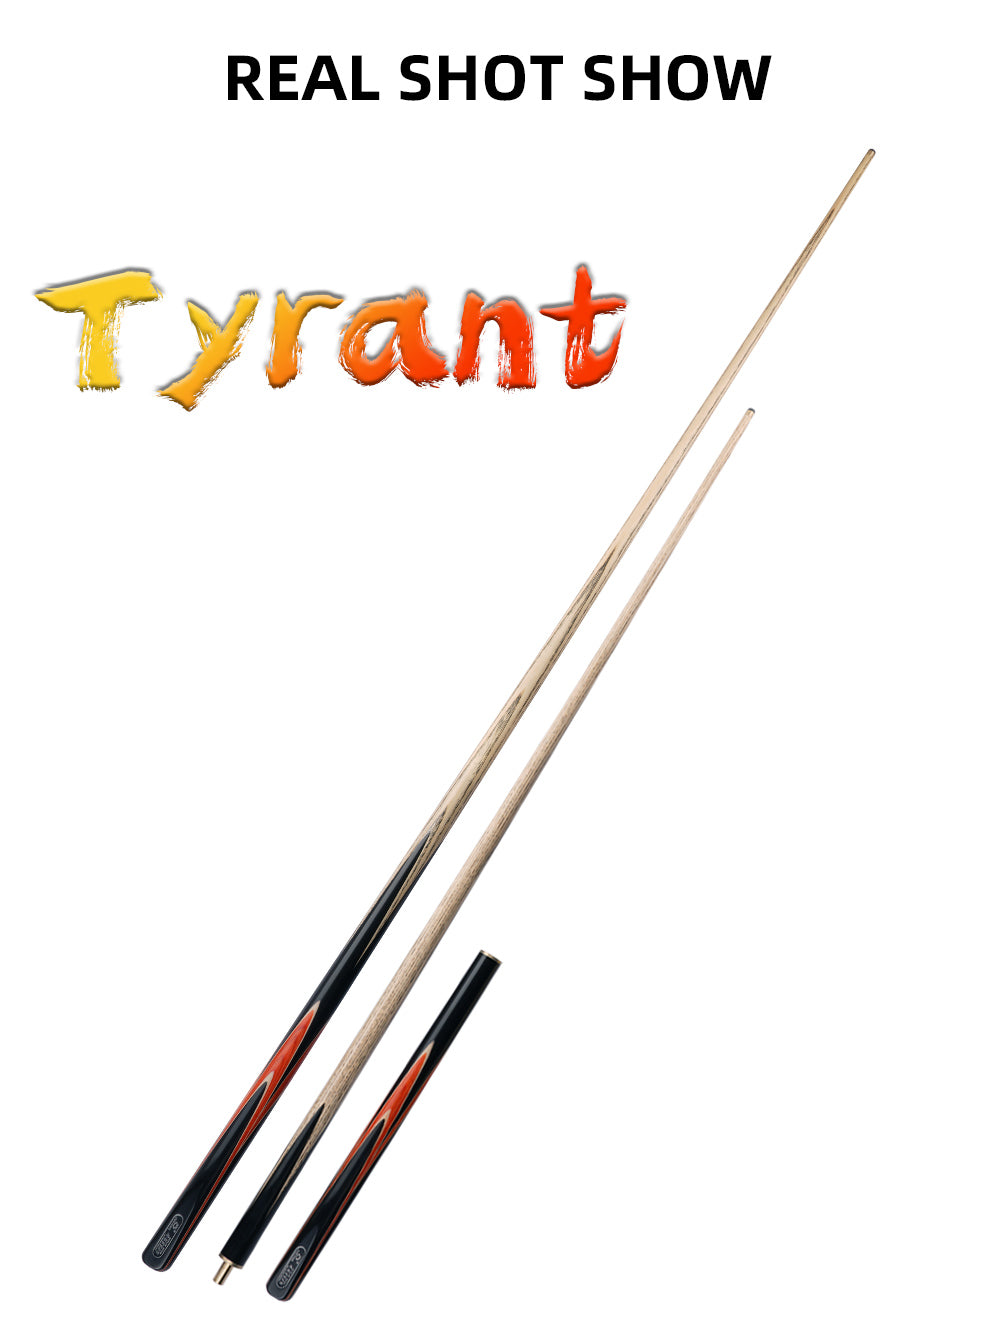 O'MIN Tyrant Snooker Cue 3/4 قطعة طقم عصا السنوكر قطعة واحدة مع جراب مع تمديد تلسكوبي 9.5 مللي متر طرف البلياردو جديلة كيت